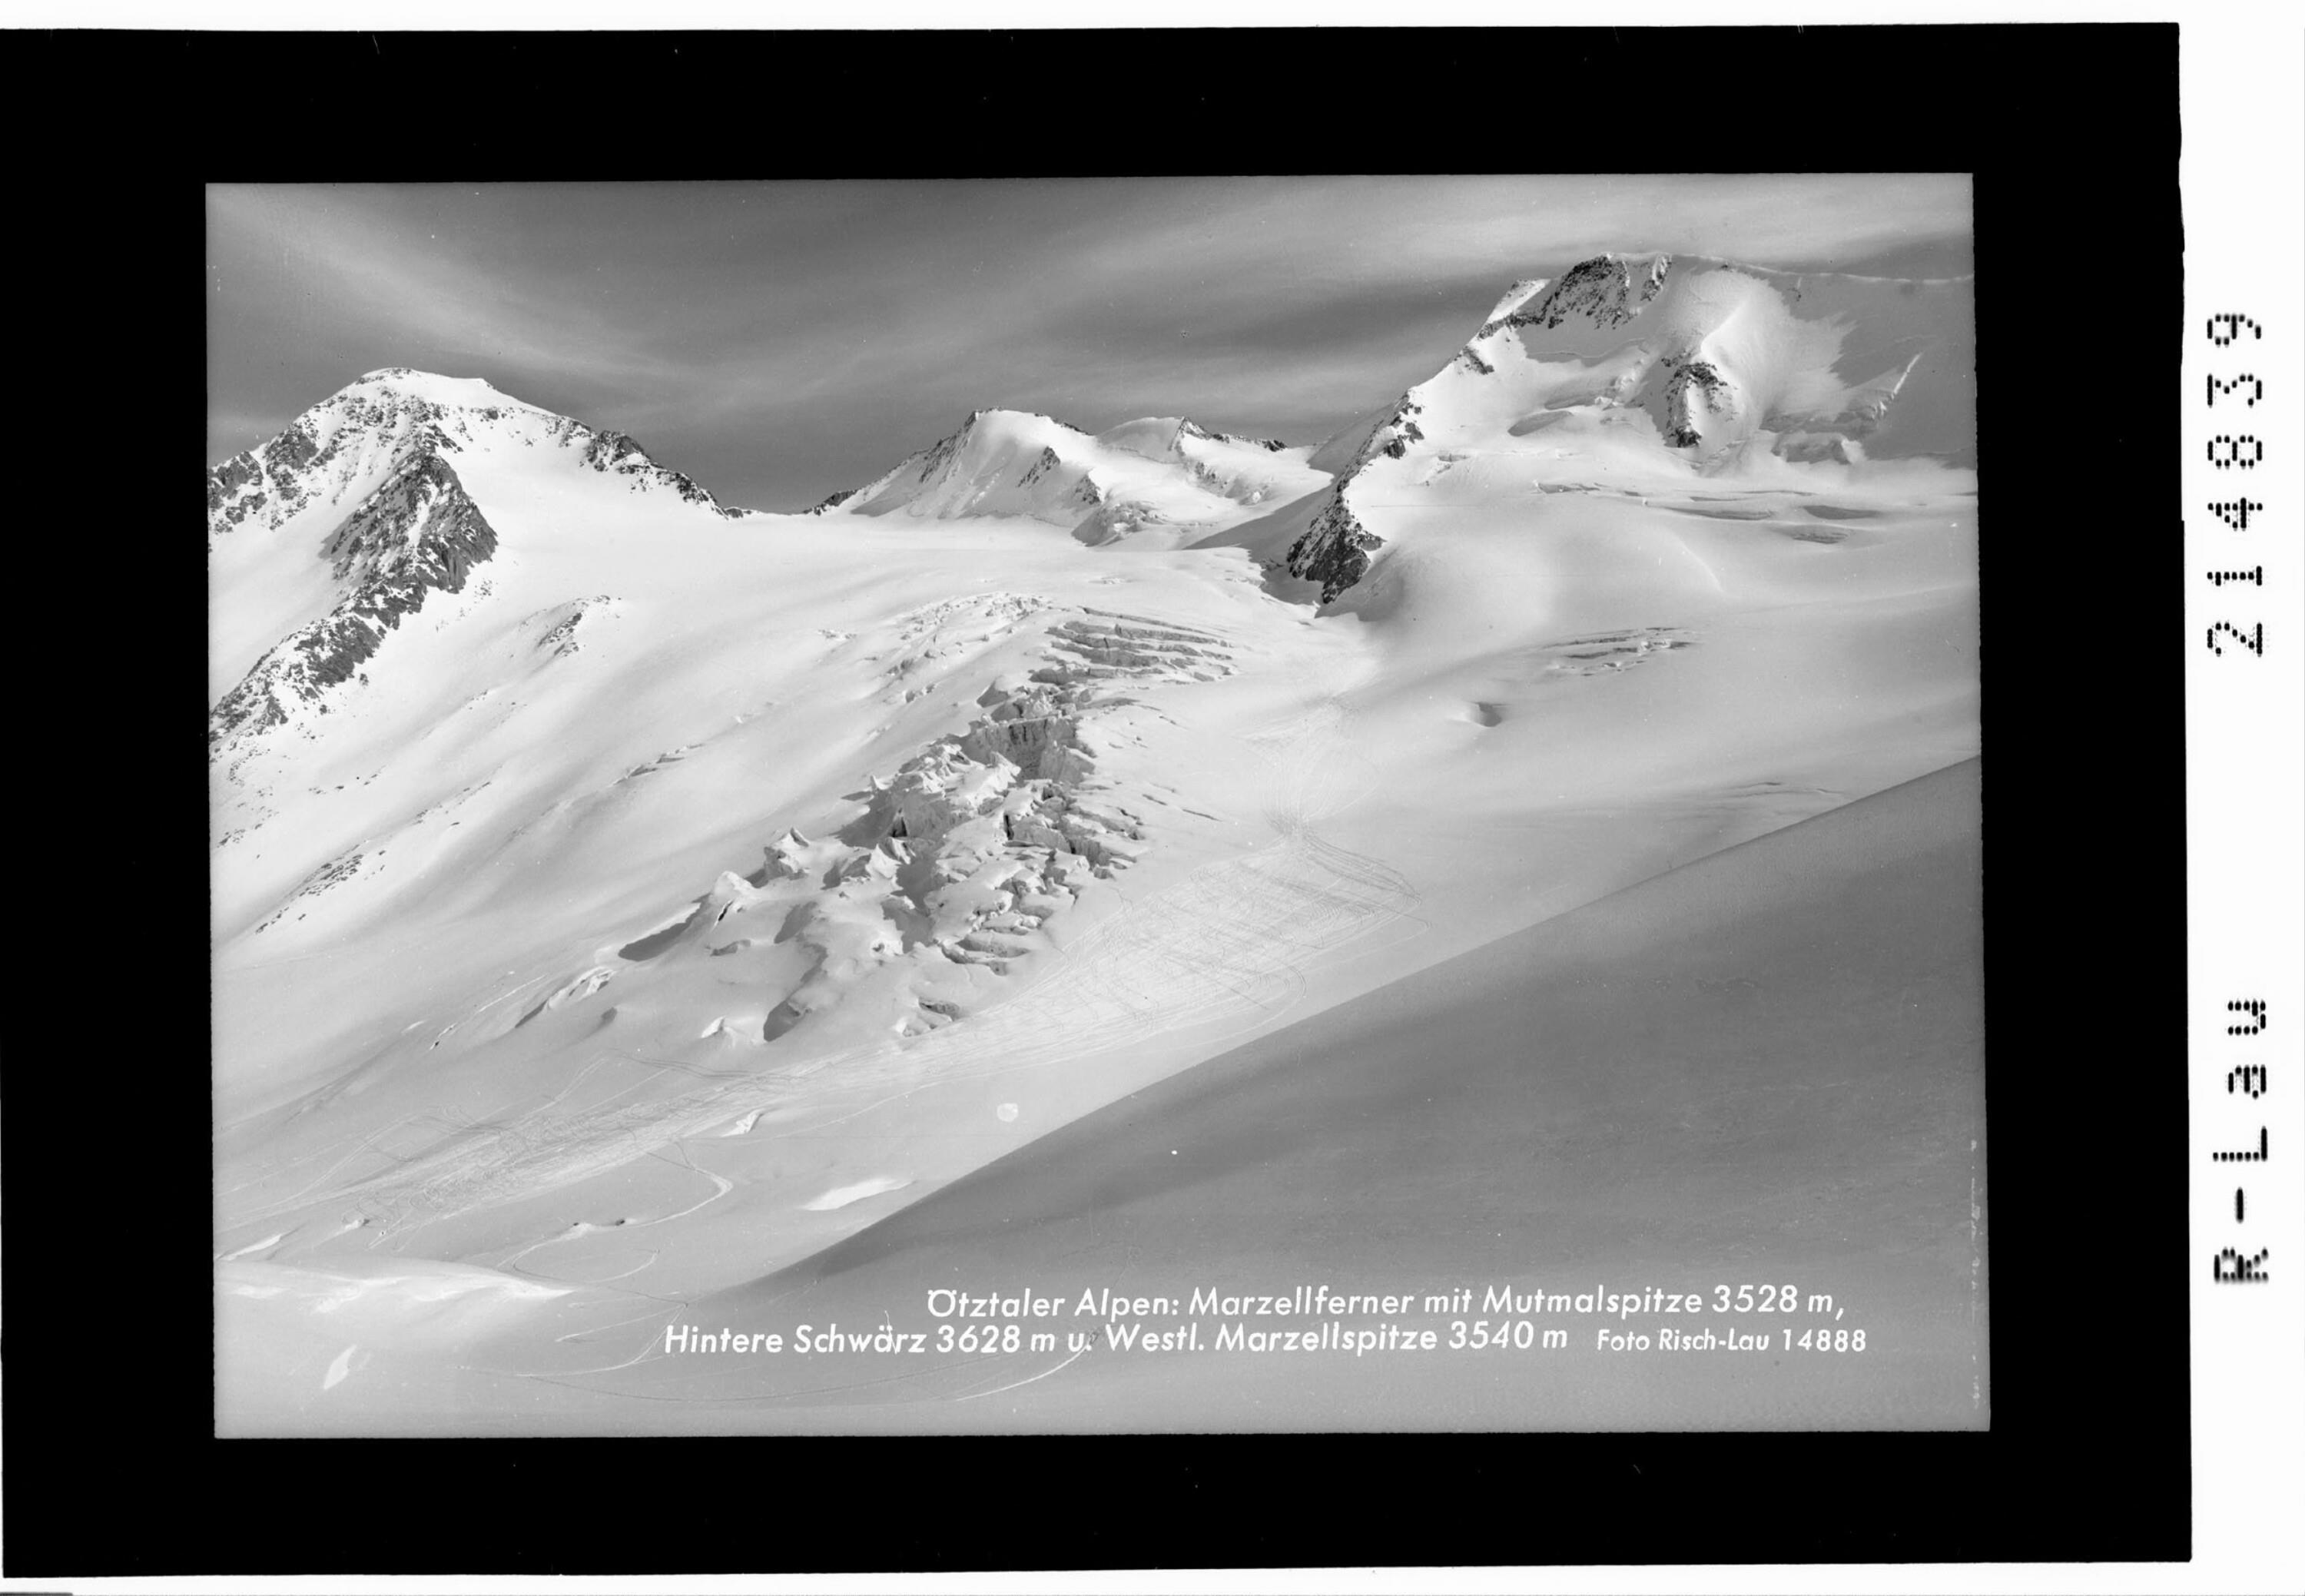 Ötztaler Alpen : Marzellferner mit Mutmalspitze 3528 m, Hintere Schwärze 3628 m und Westliche Marzellspitze 3540 m></div>


    <hr>
    <div class=